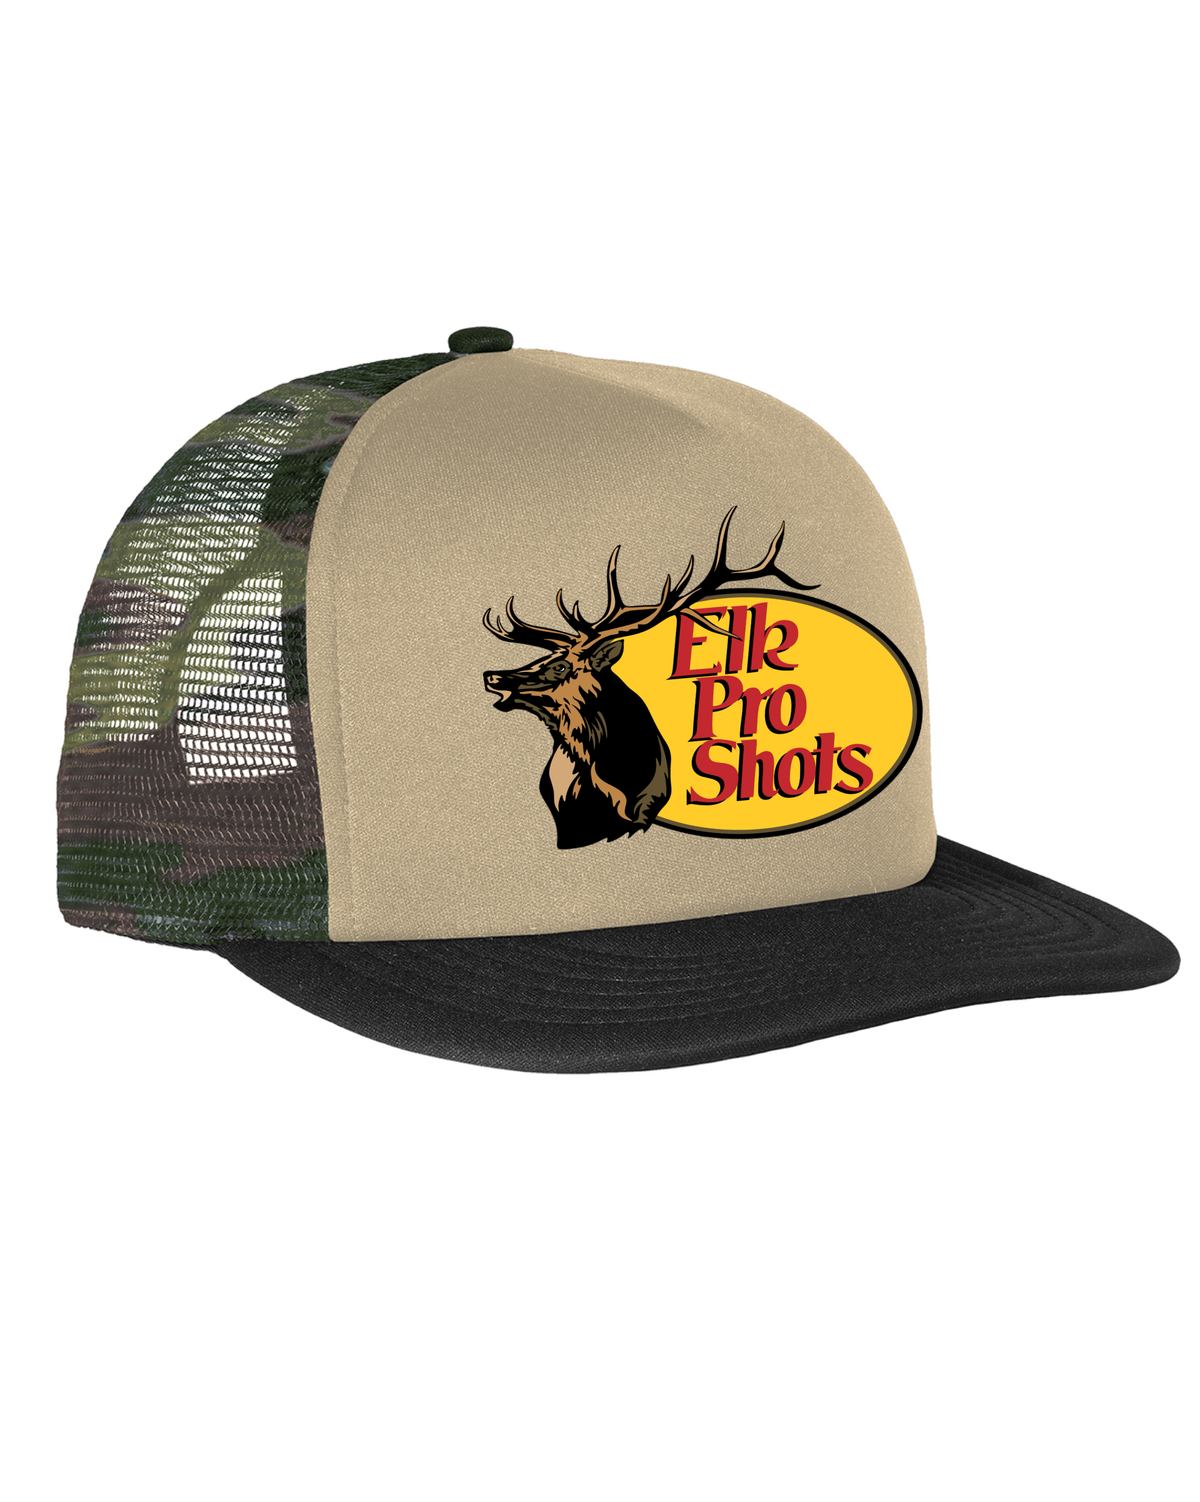 Elk Assassins - Elk Pro Shots Tan Foam Camo Back Flatbill Hat OD